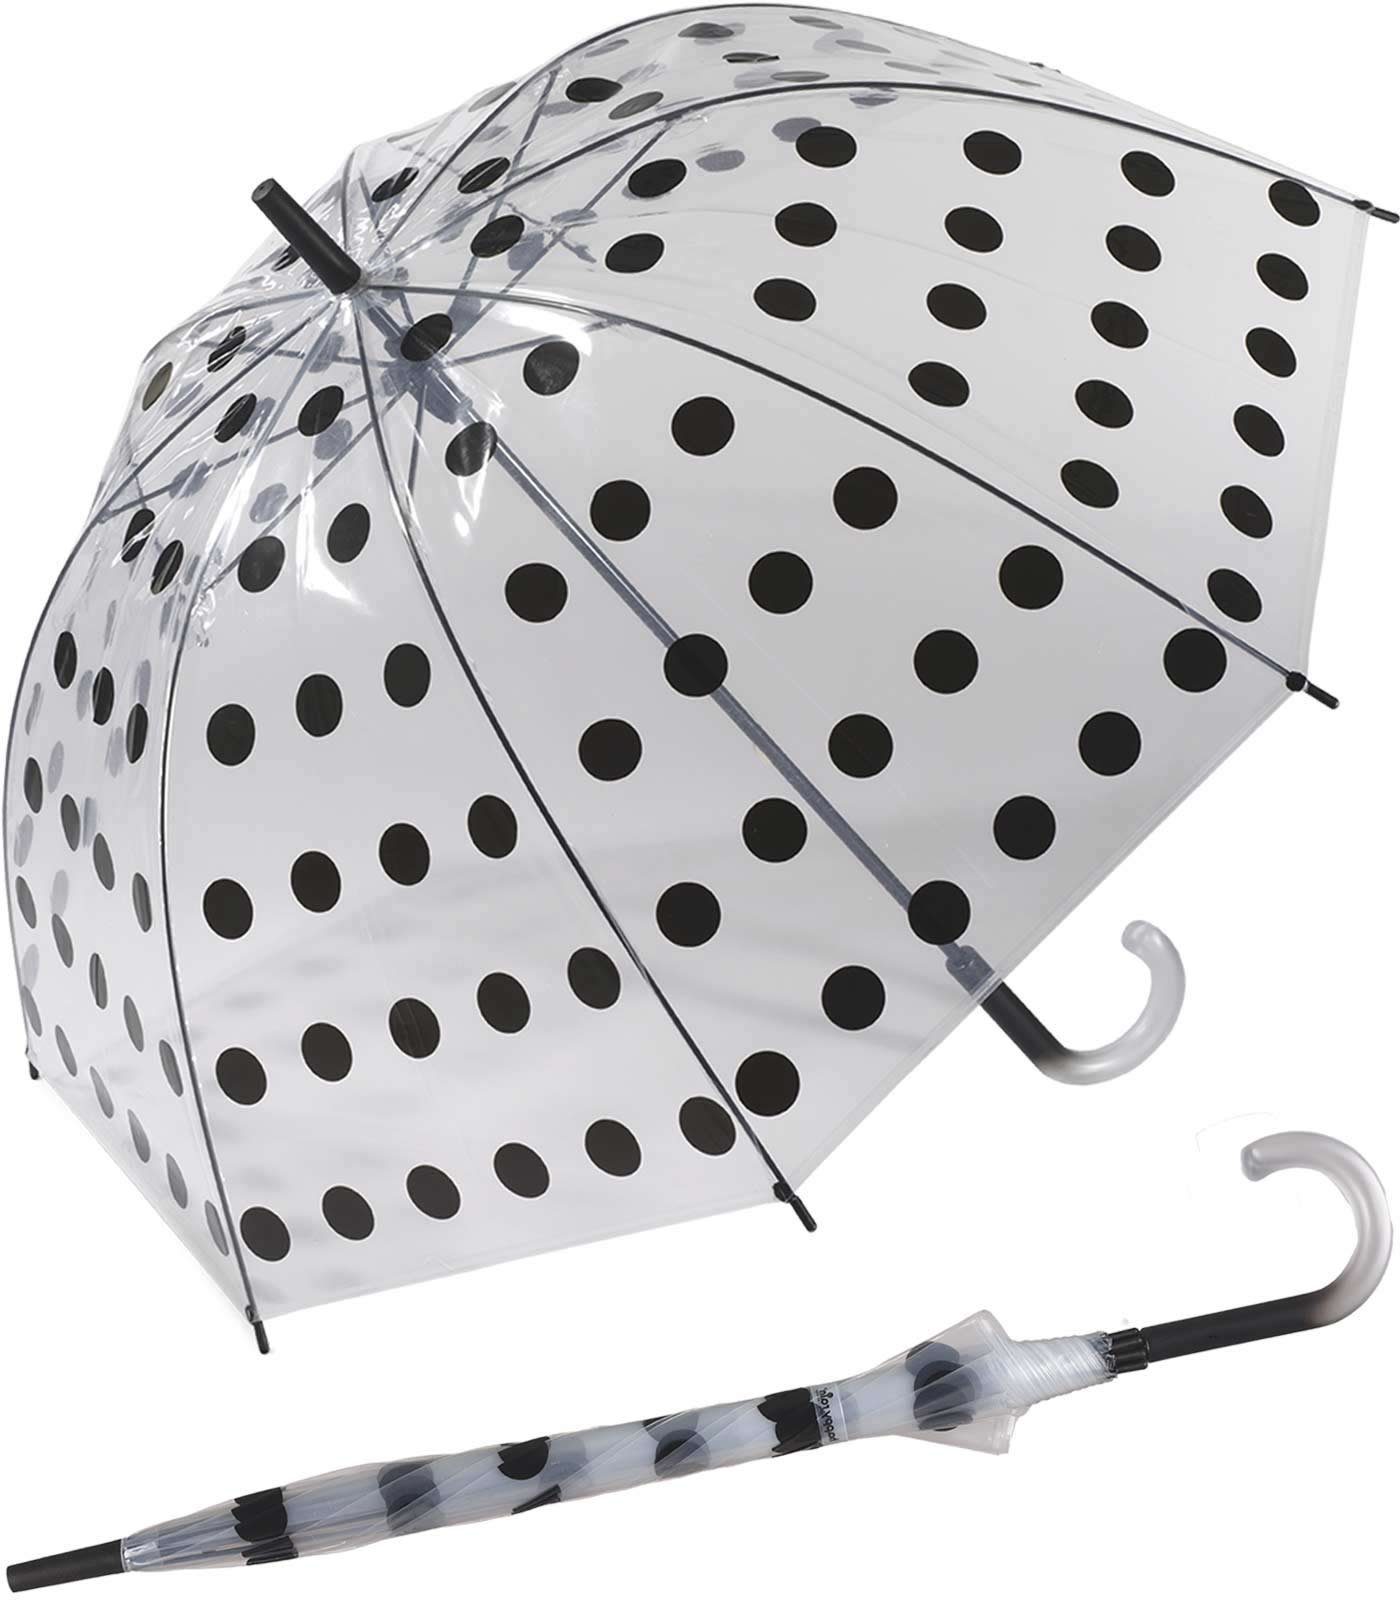 HAPPY RAIN Langregenschirm großer transparenter Glockenschirm Big Dots, bunte Punkte bringen Farbe in das nasse Grau tansparent-schwarz